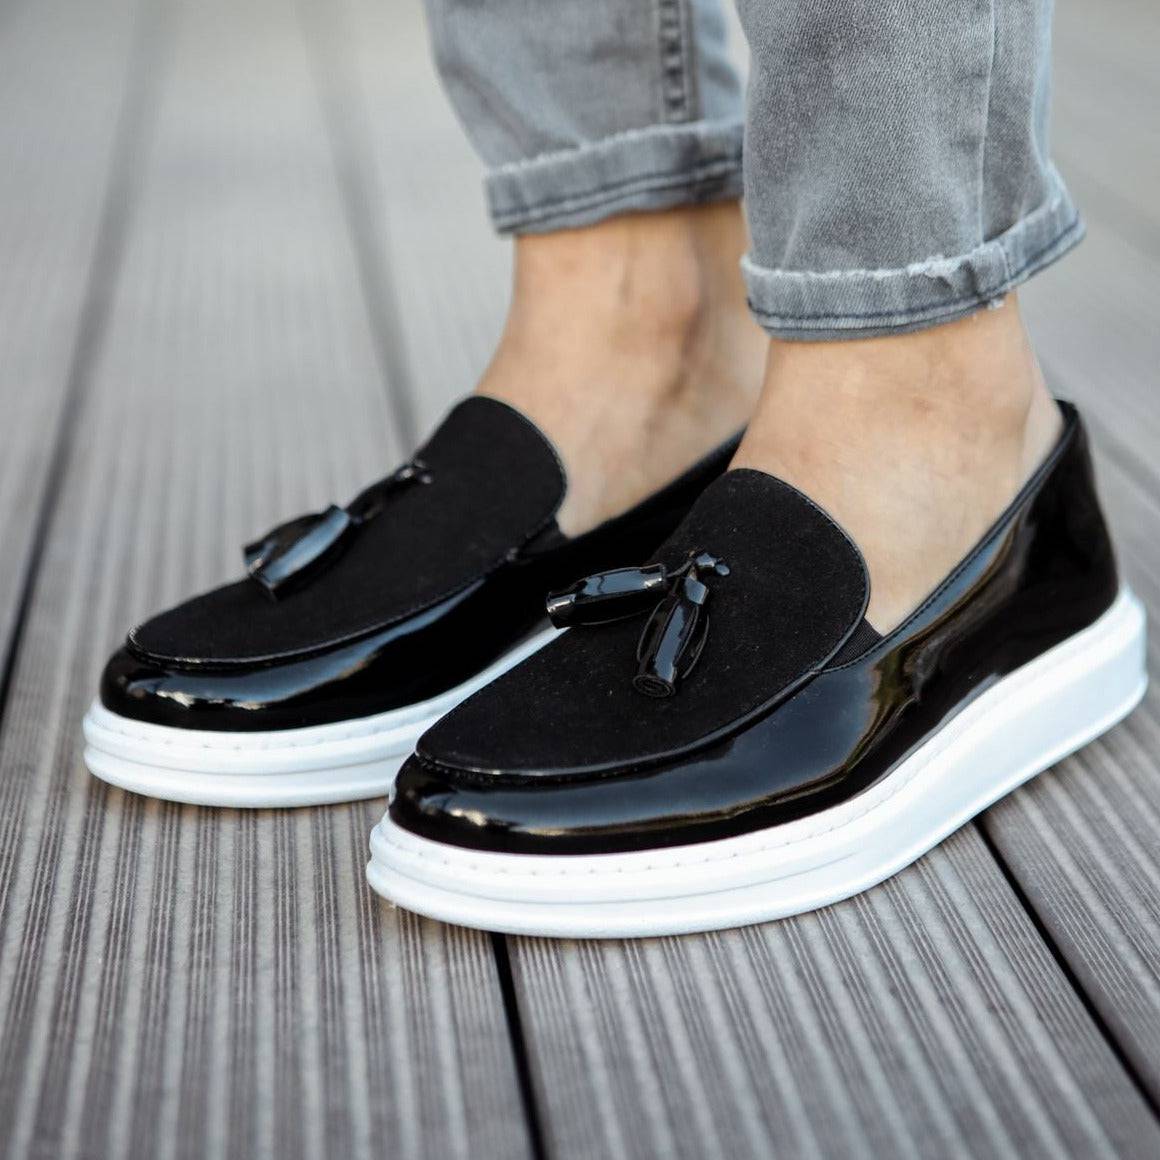 Casual Loafers for Men by Apollo | Roma Patent Black & White – Moda